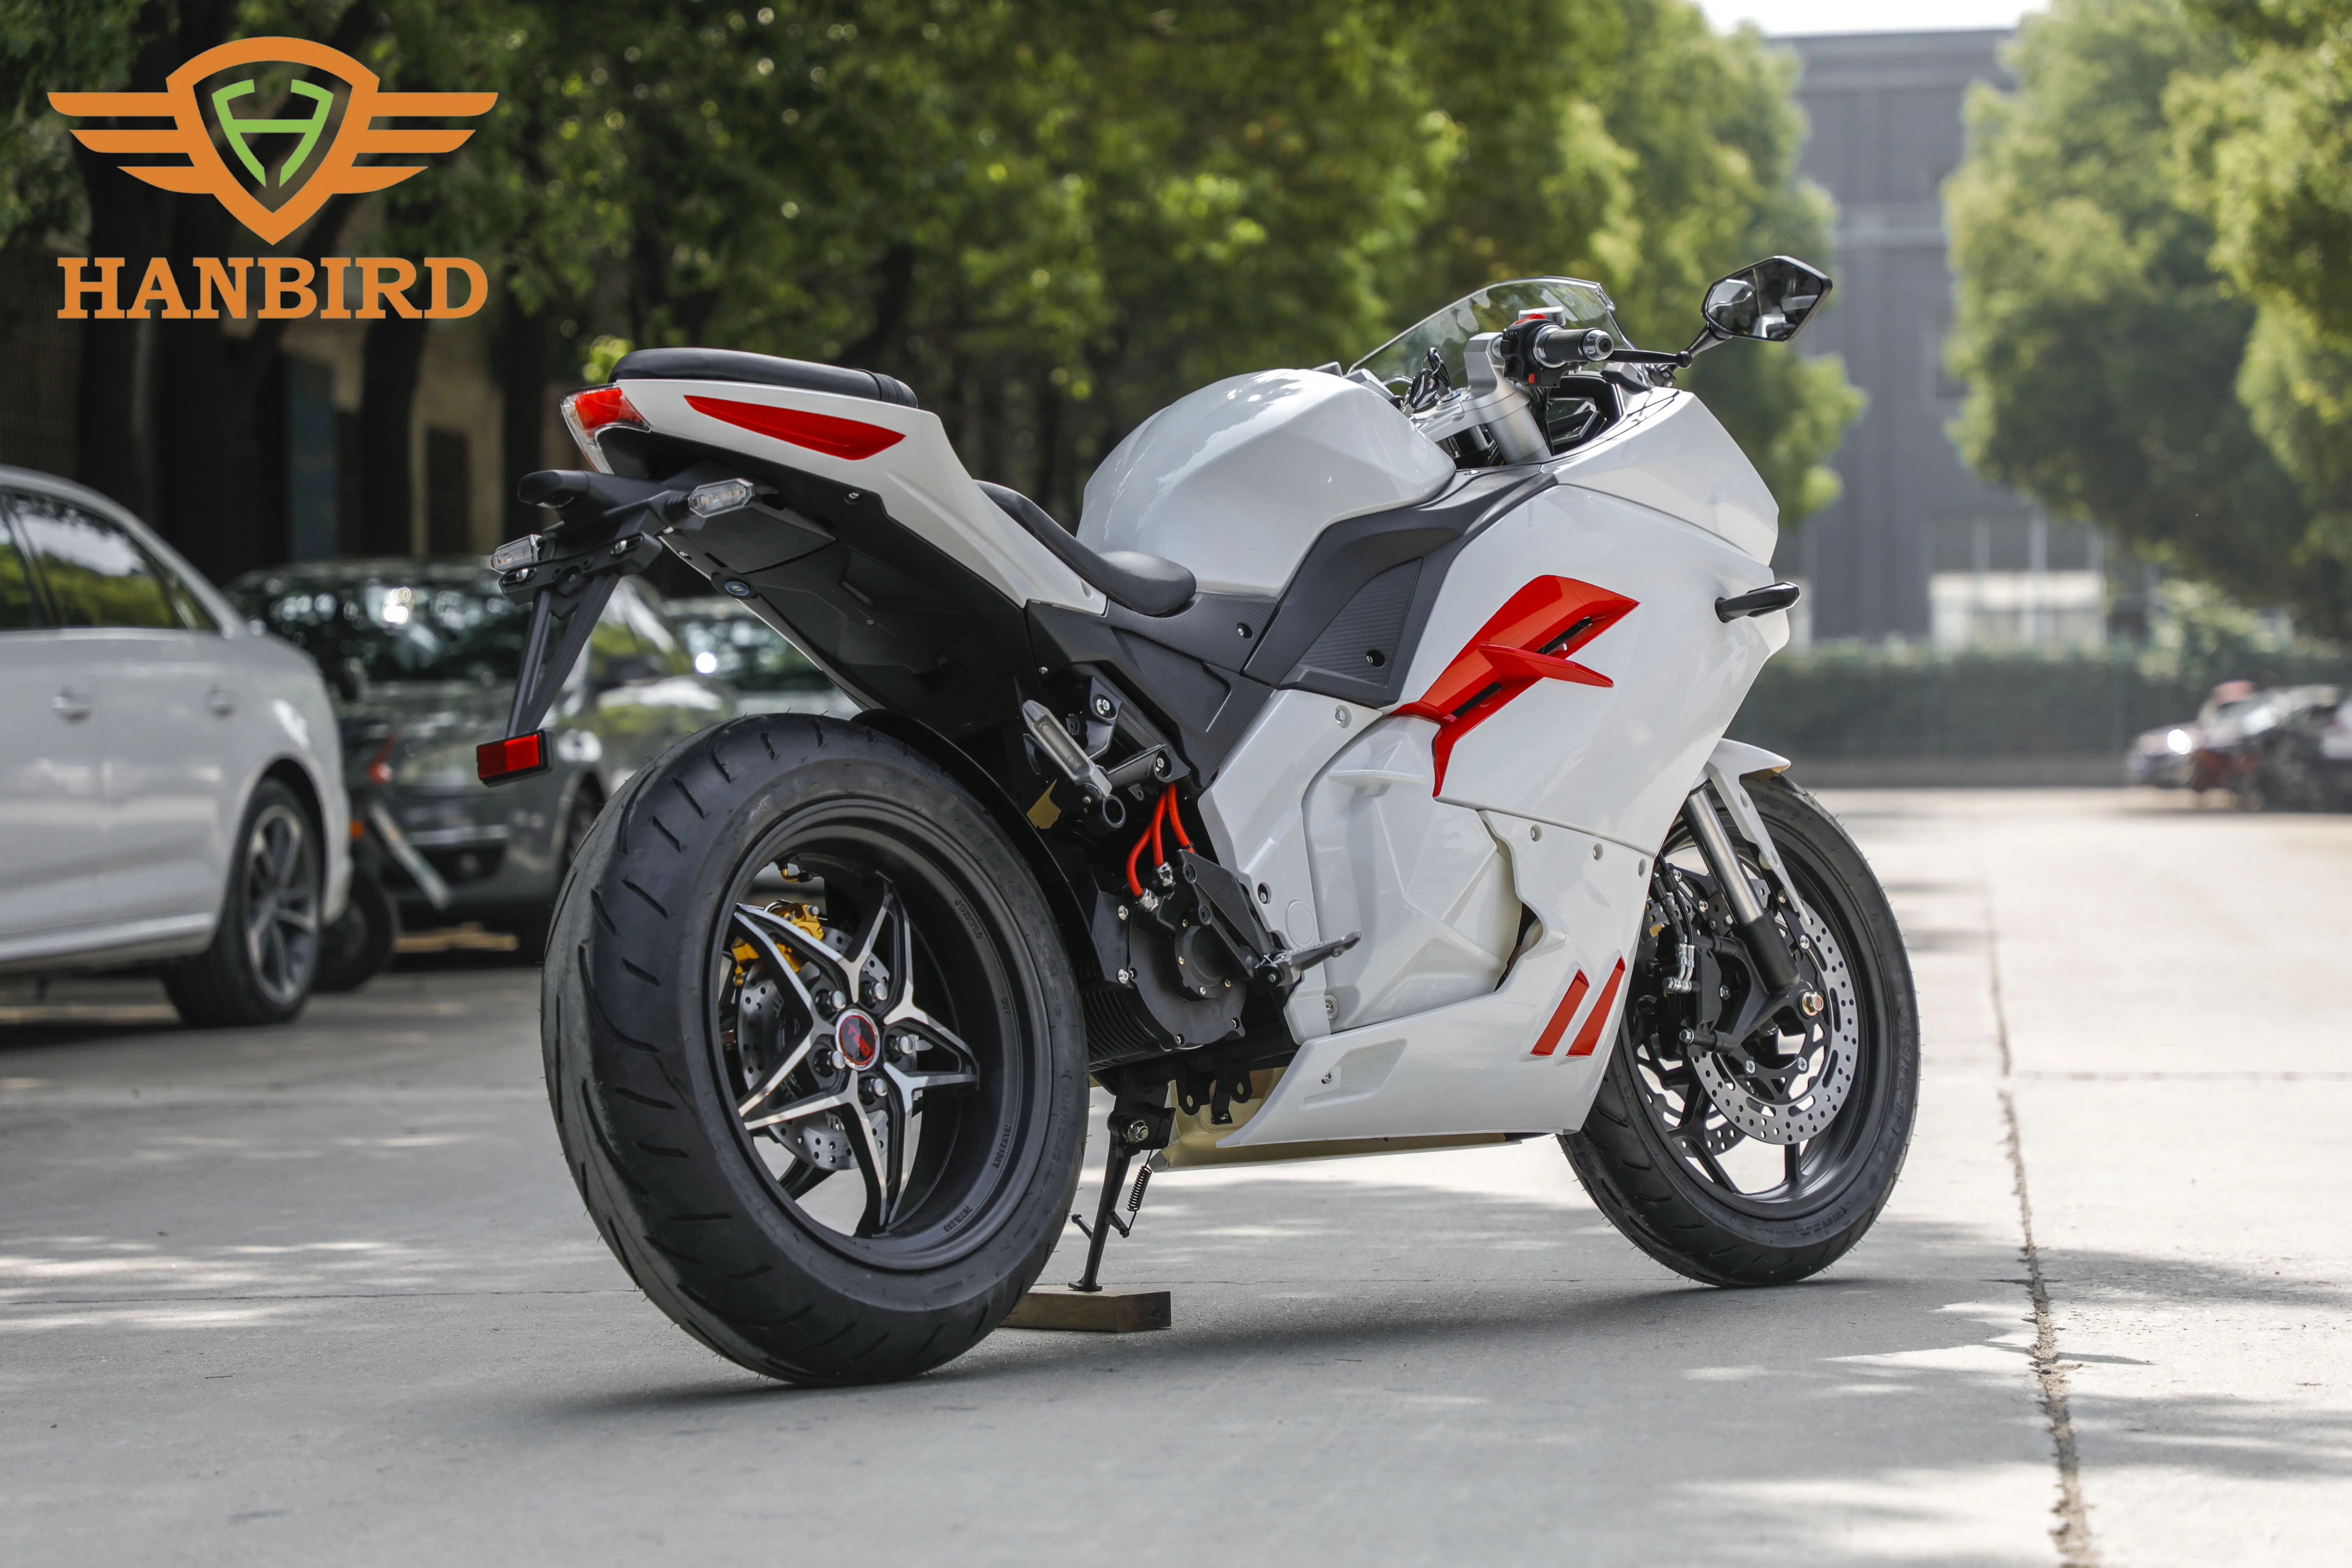 Power 5000W sepeda motor mesin jalan hukum olahraga sepeda motor listrik dengan Layanan Terbaik dan harga rendah